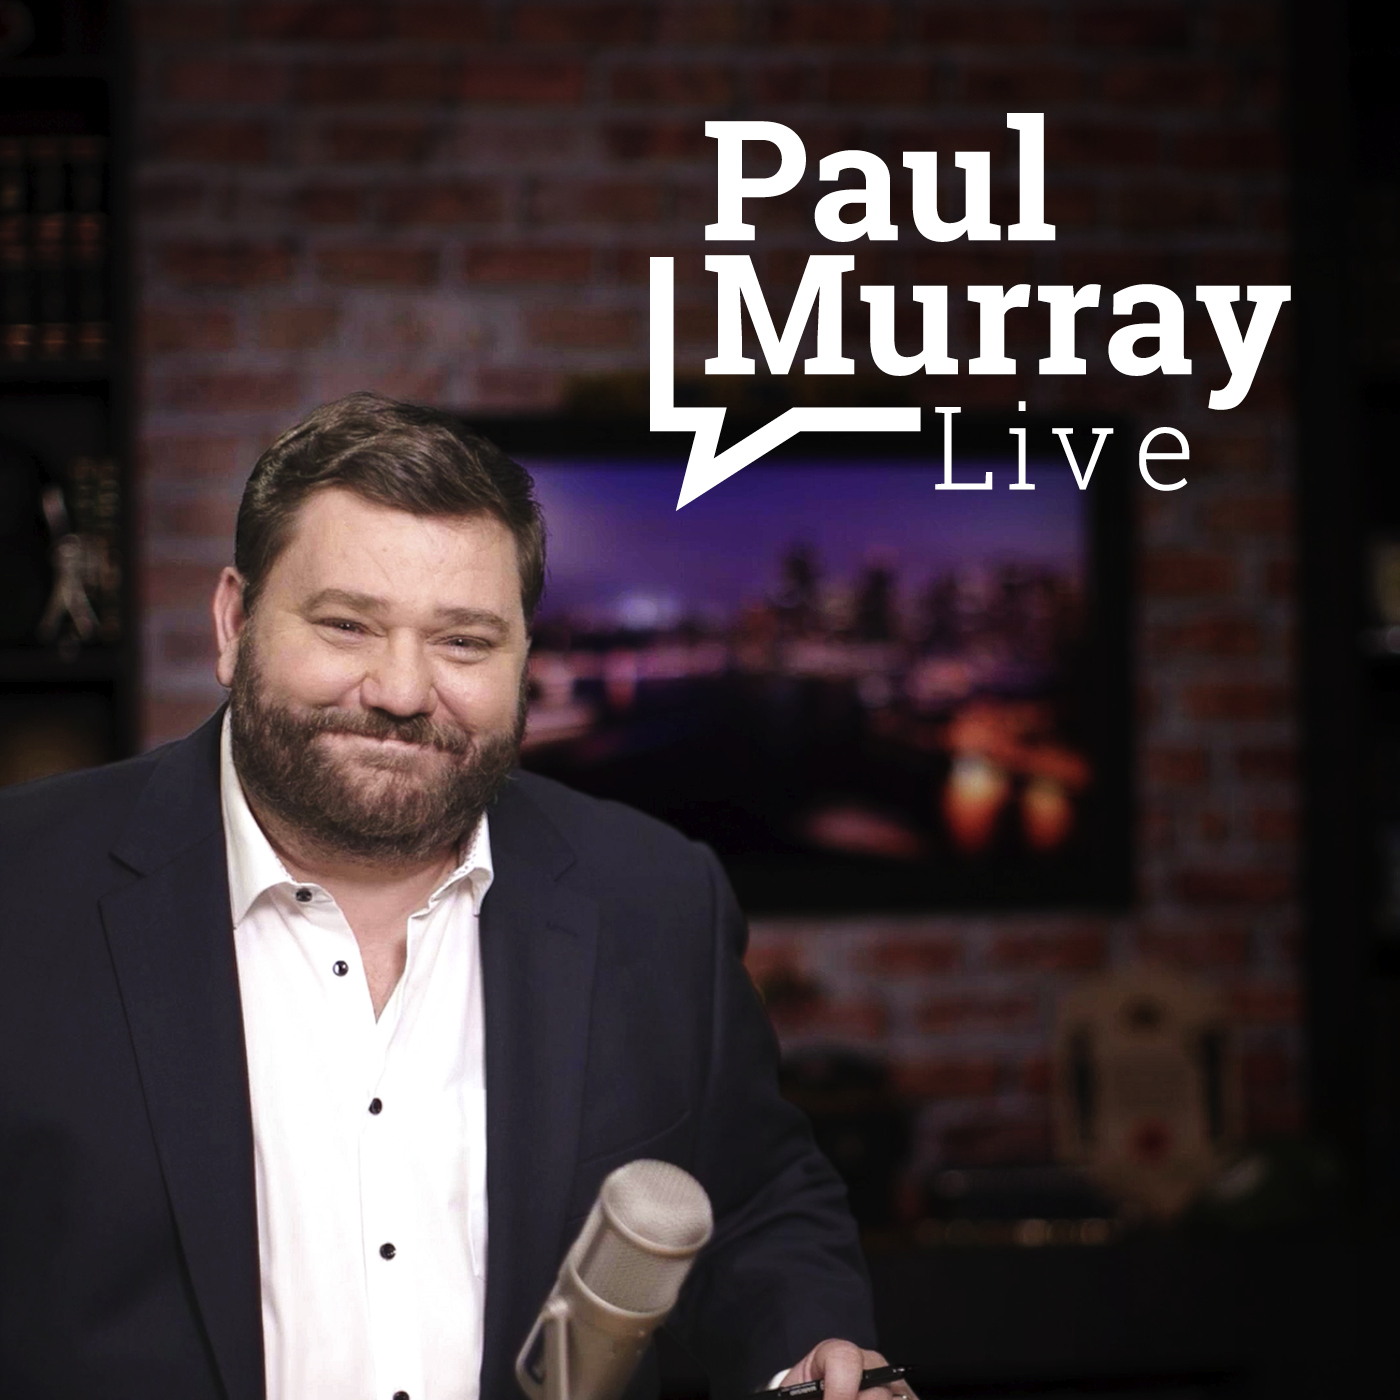 Paul Murray Live, Thursday 16th September